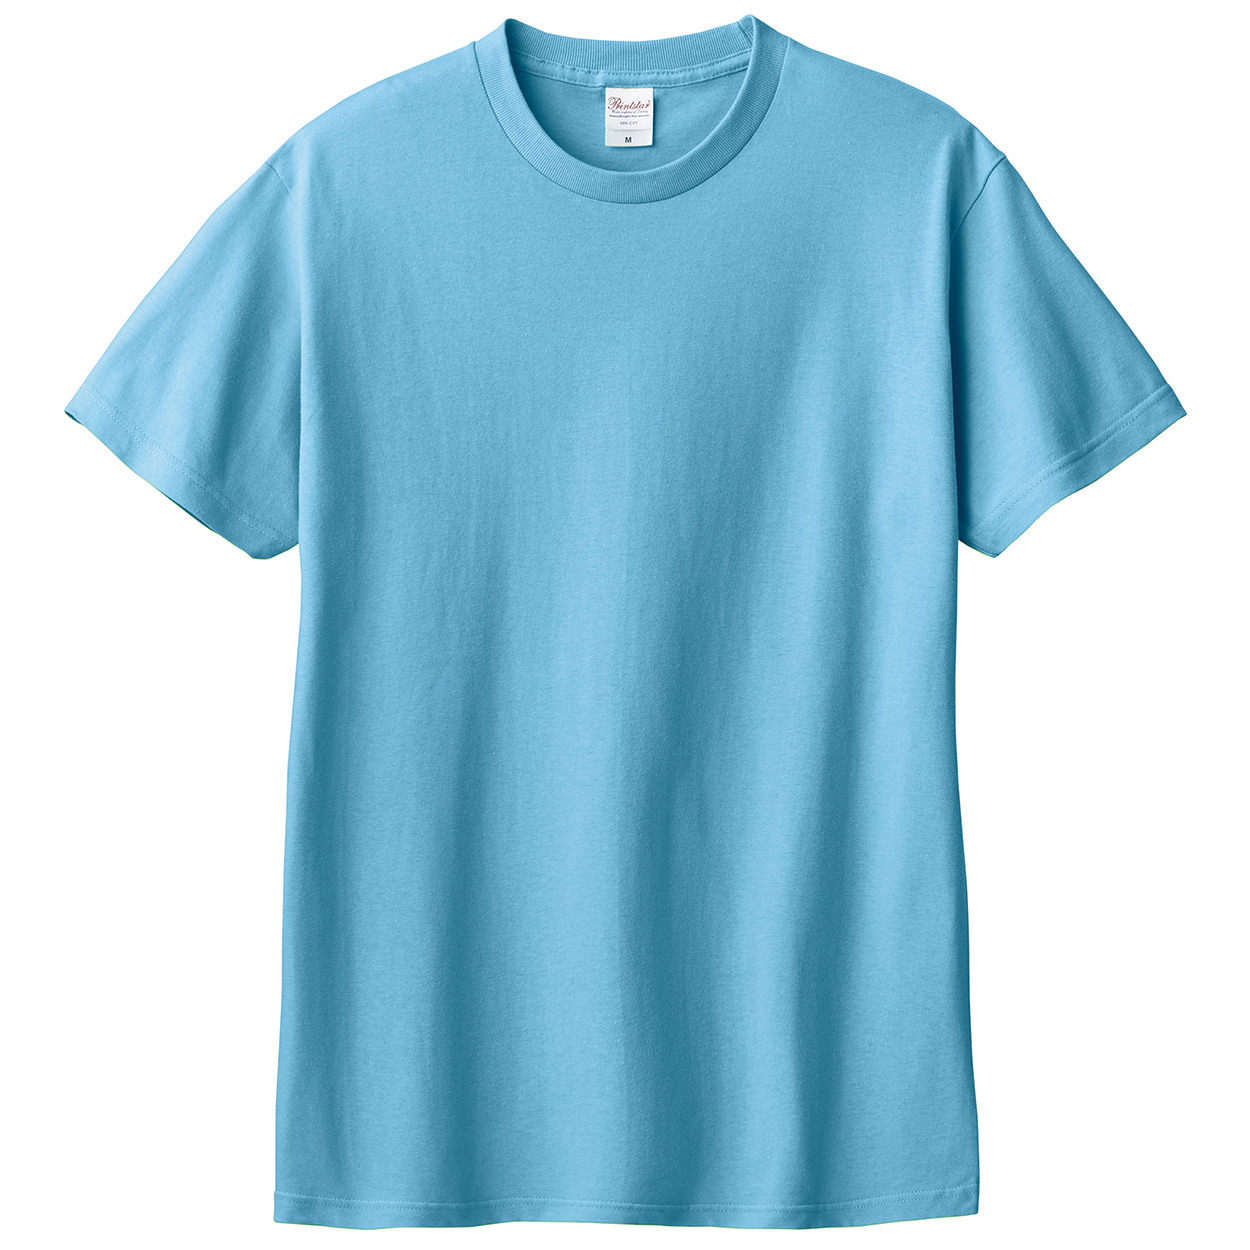 Tシャツ メンズ レディース 定番 無地 半袖 人気 ブランド アメカジ スポーツ アウトドア かっこいい かわいい 青 紫 水色 プレゼント ギフト S～XL プリントスター 大人 男性 女性 男子 女子 S M L XL XXL XXXL 20代 30代 40代 50代 (取寄せ)